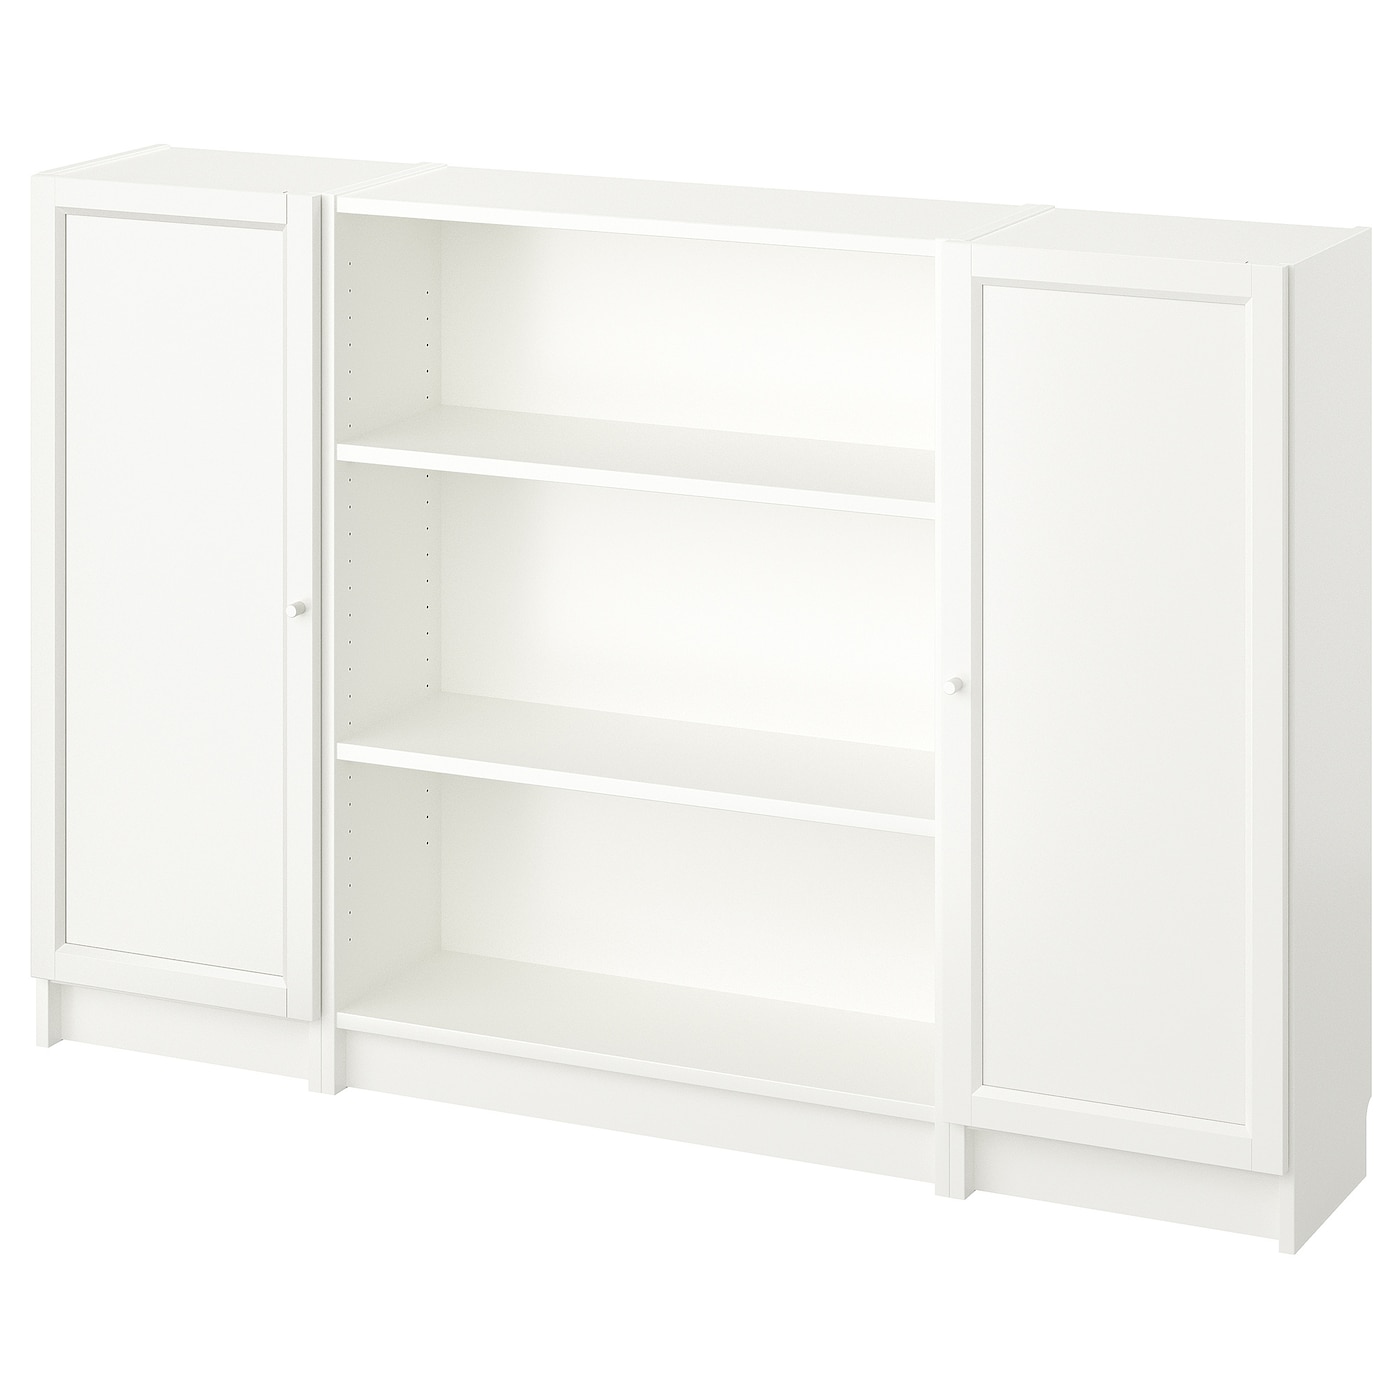 Открытый книжный шкаф - BILLY IKEA/БИЛЛИ ИКЕА, 30х160х106 см, белый